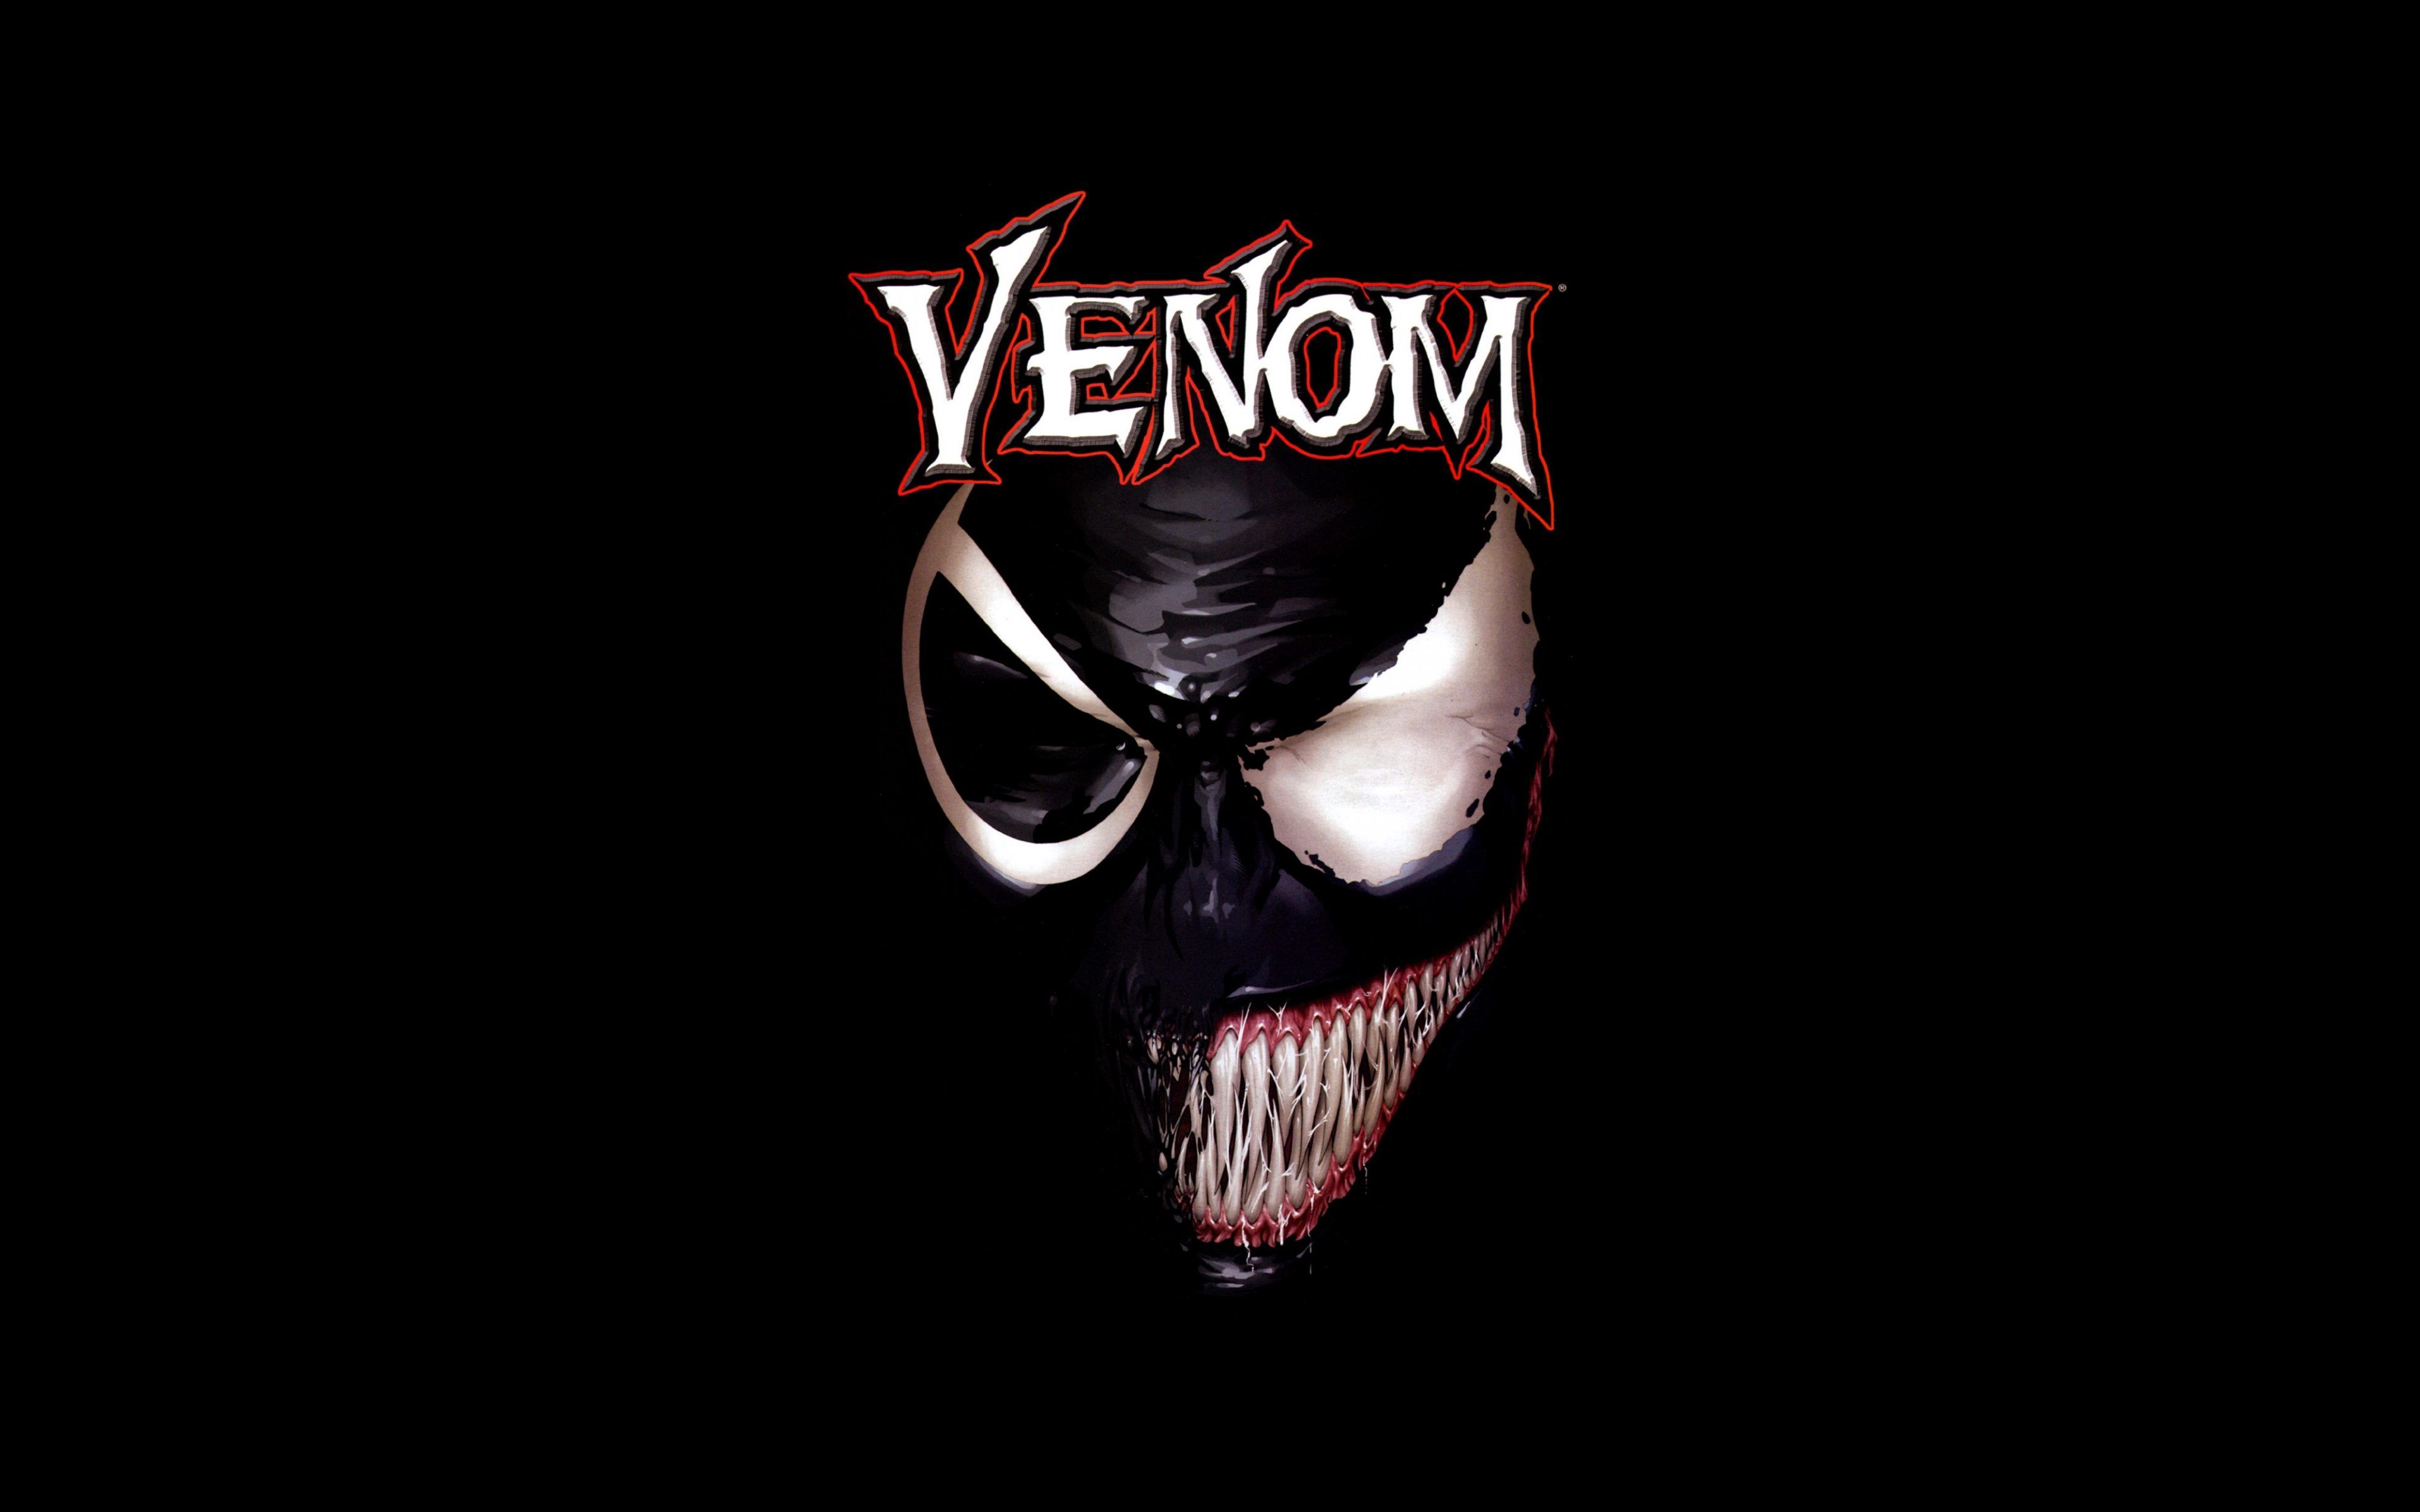 Venom Movie Black Poster 4K Wallpaper